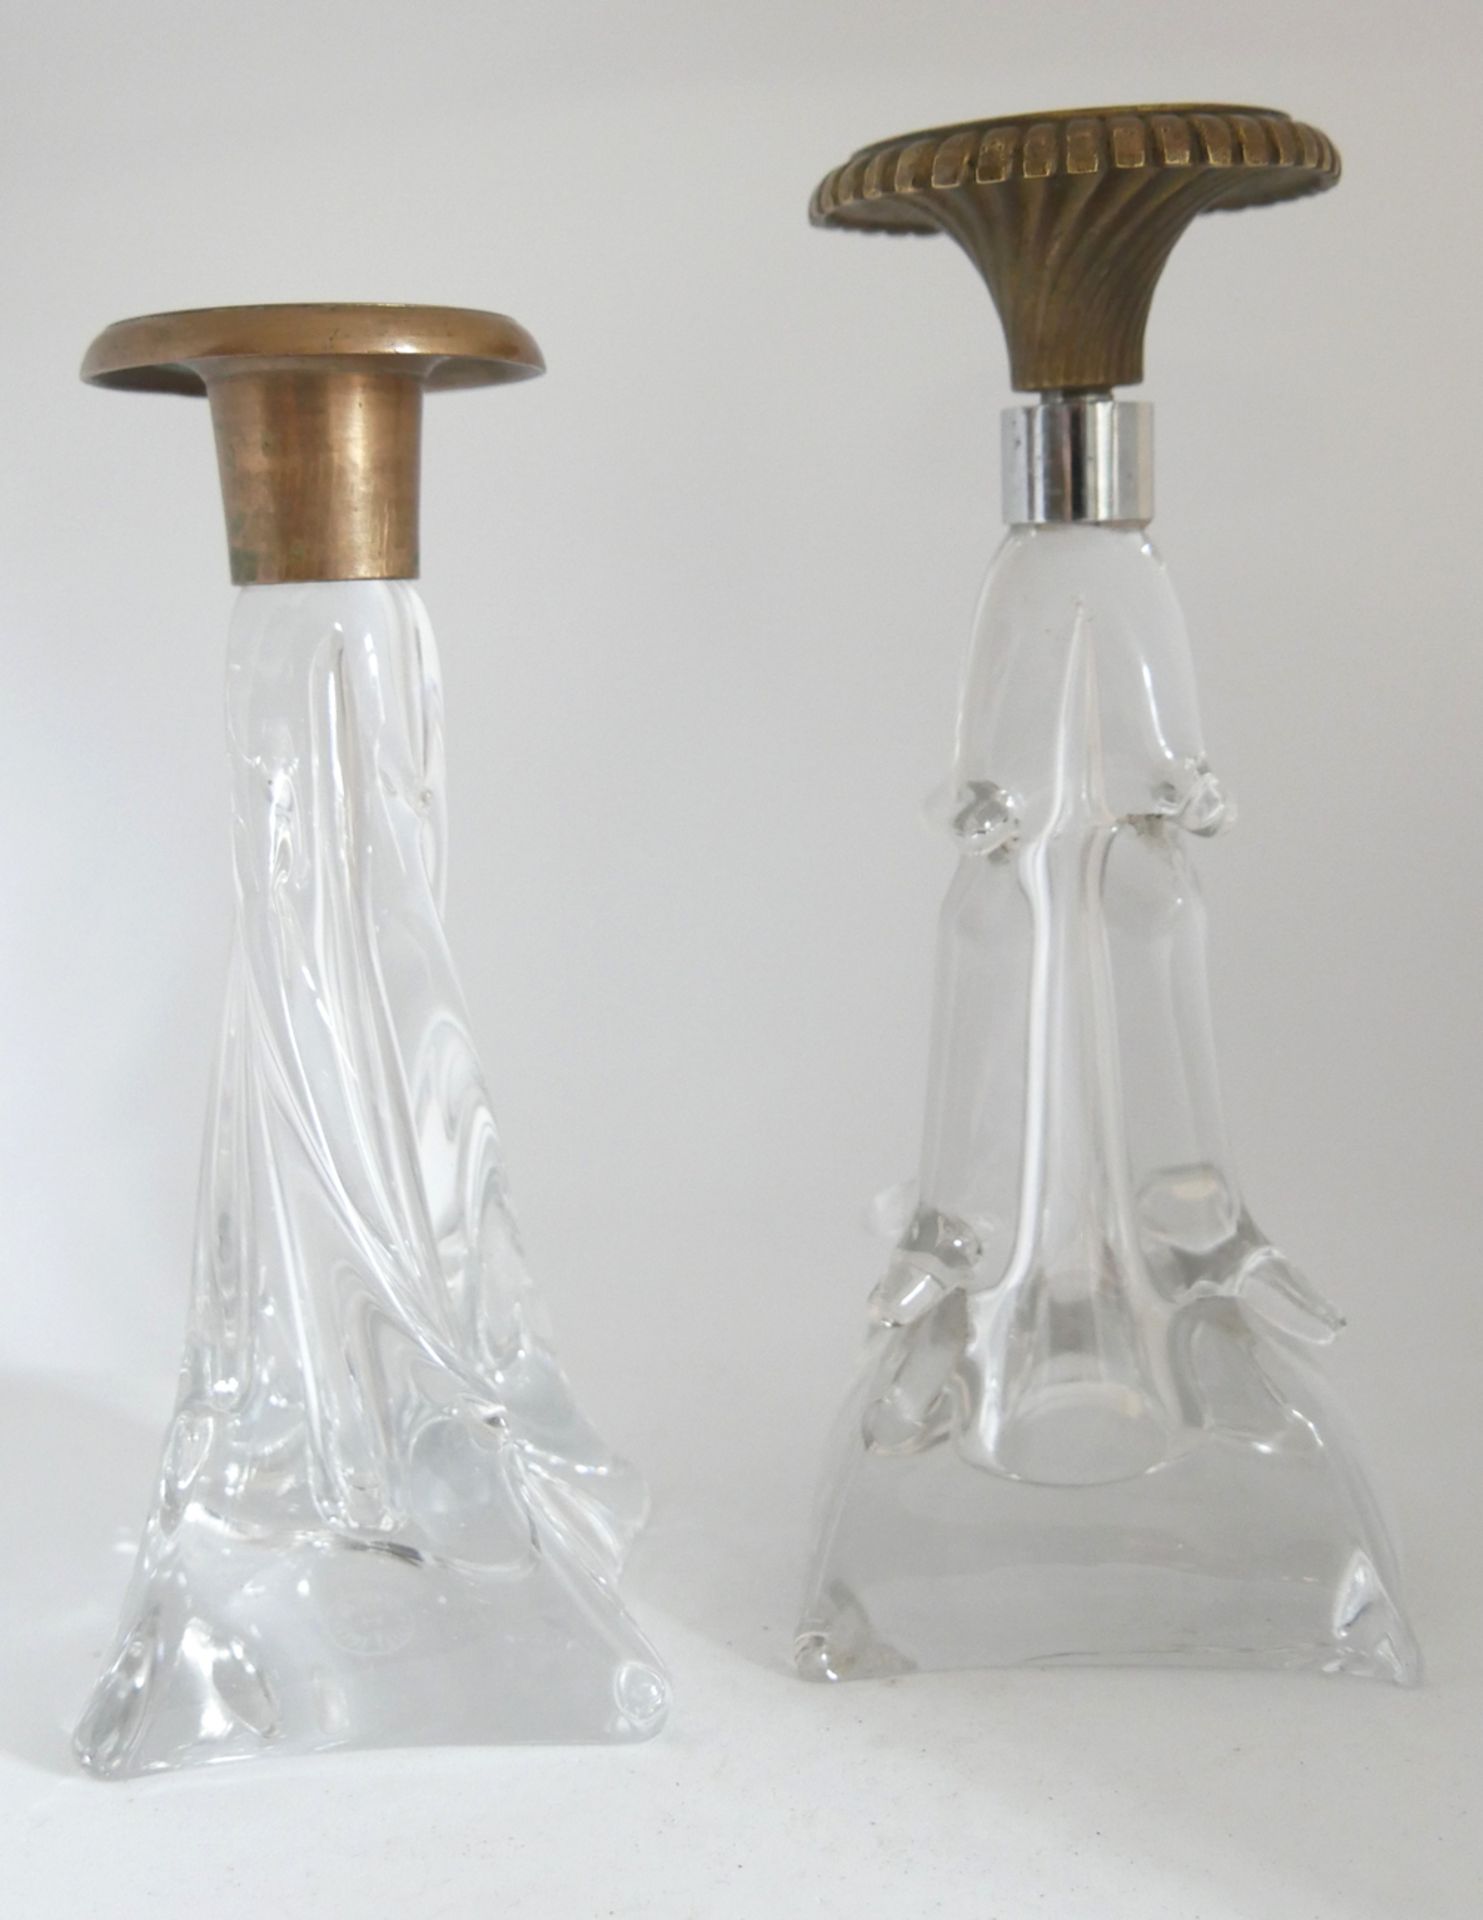 2 schwere Kristallglasleuchter, 1x mit Ritzmarke Cristallerie Lorraine, Höhe ca. 17 cm, 1x